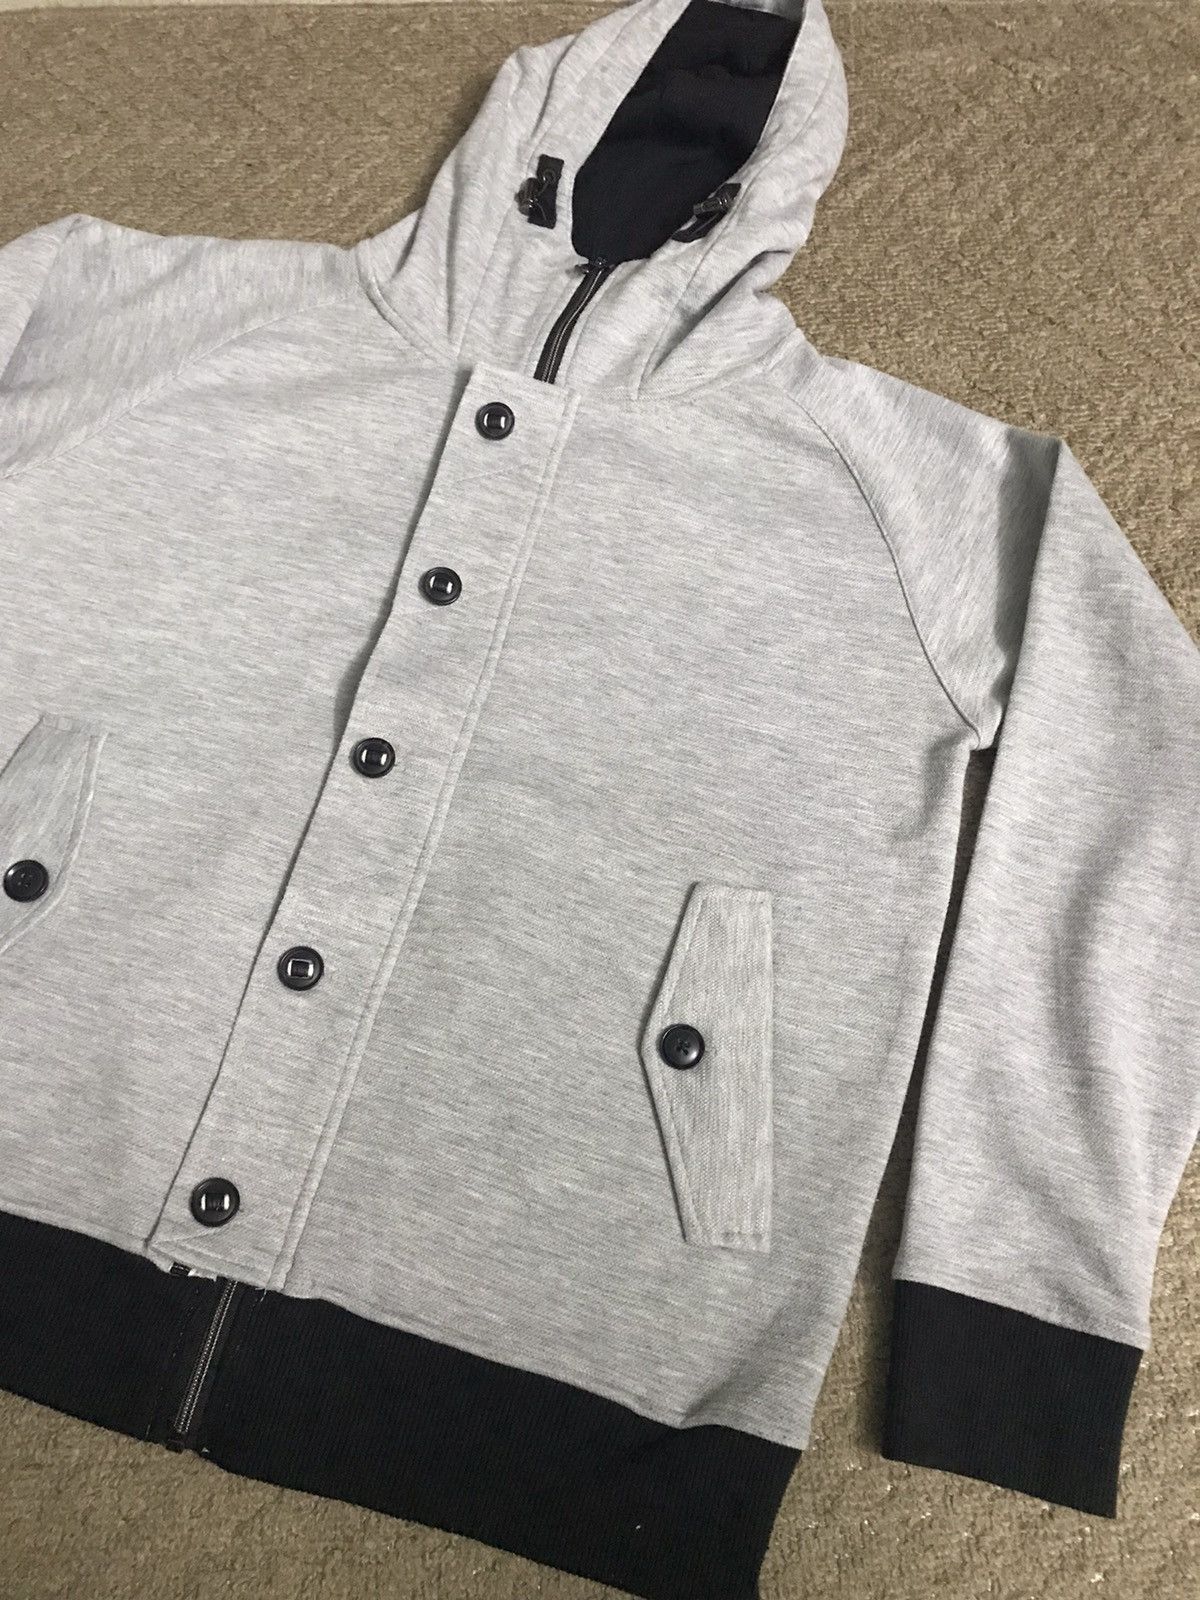 Plus One Clothing - Plus one hoodie jacket - gh0220 - 1